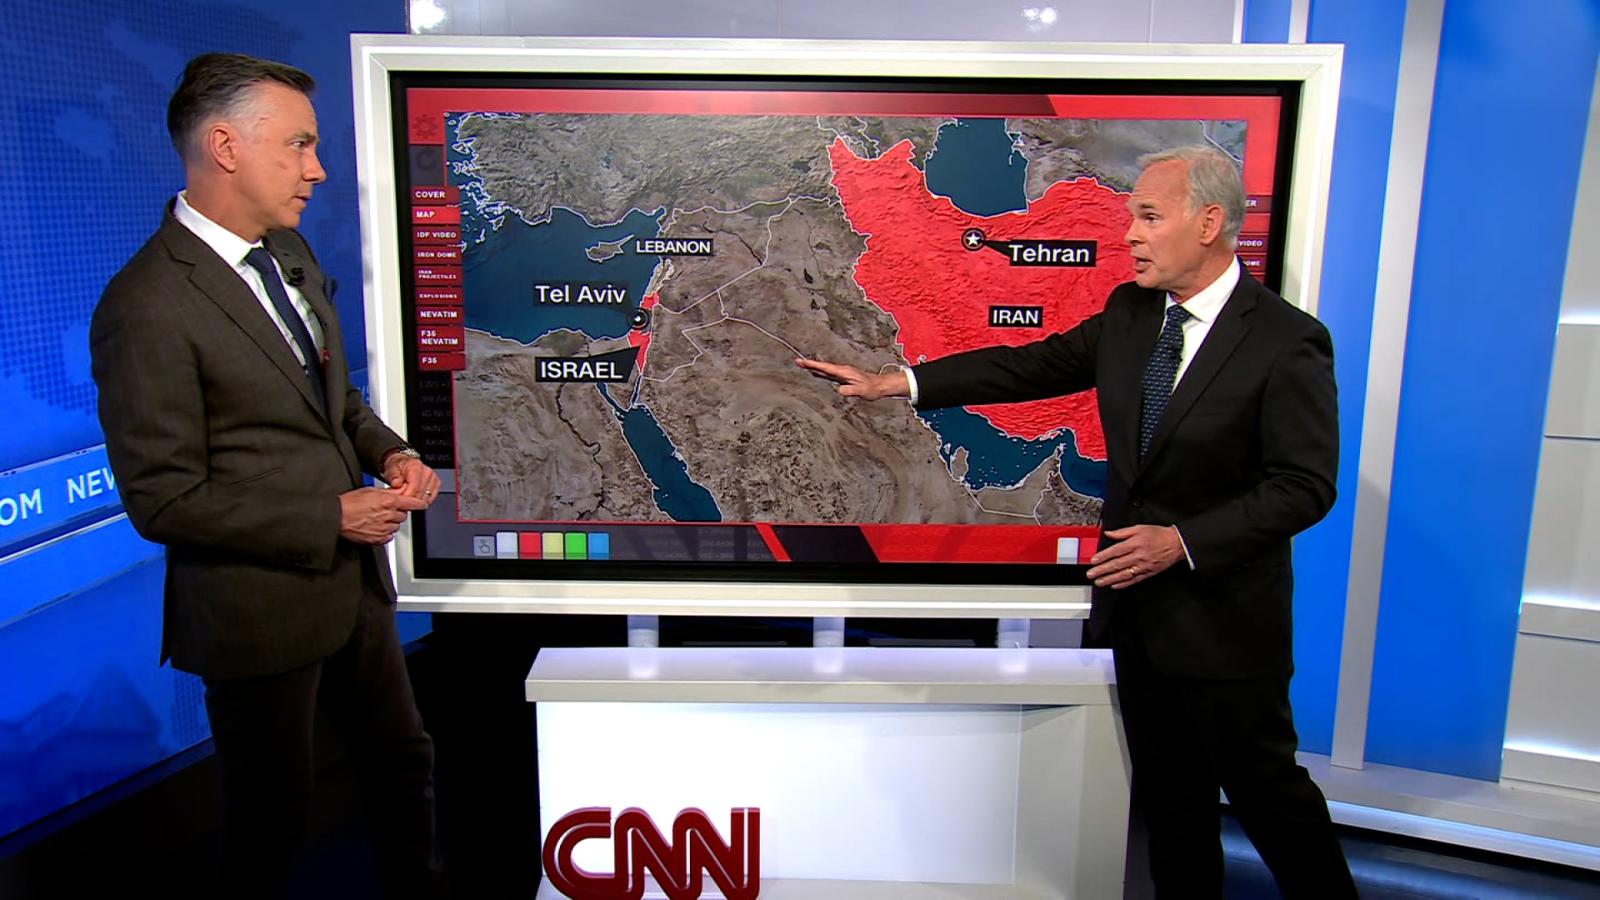 Irán envía un mensaje a EE.UU. a través de Turquía, según
coronel retirado